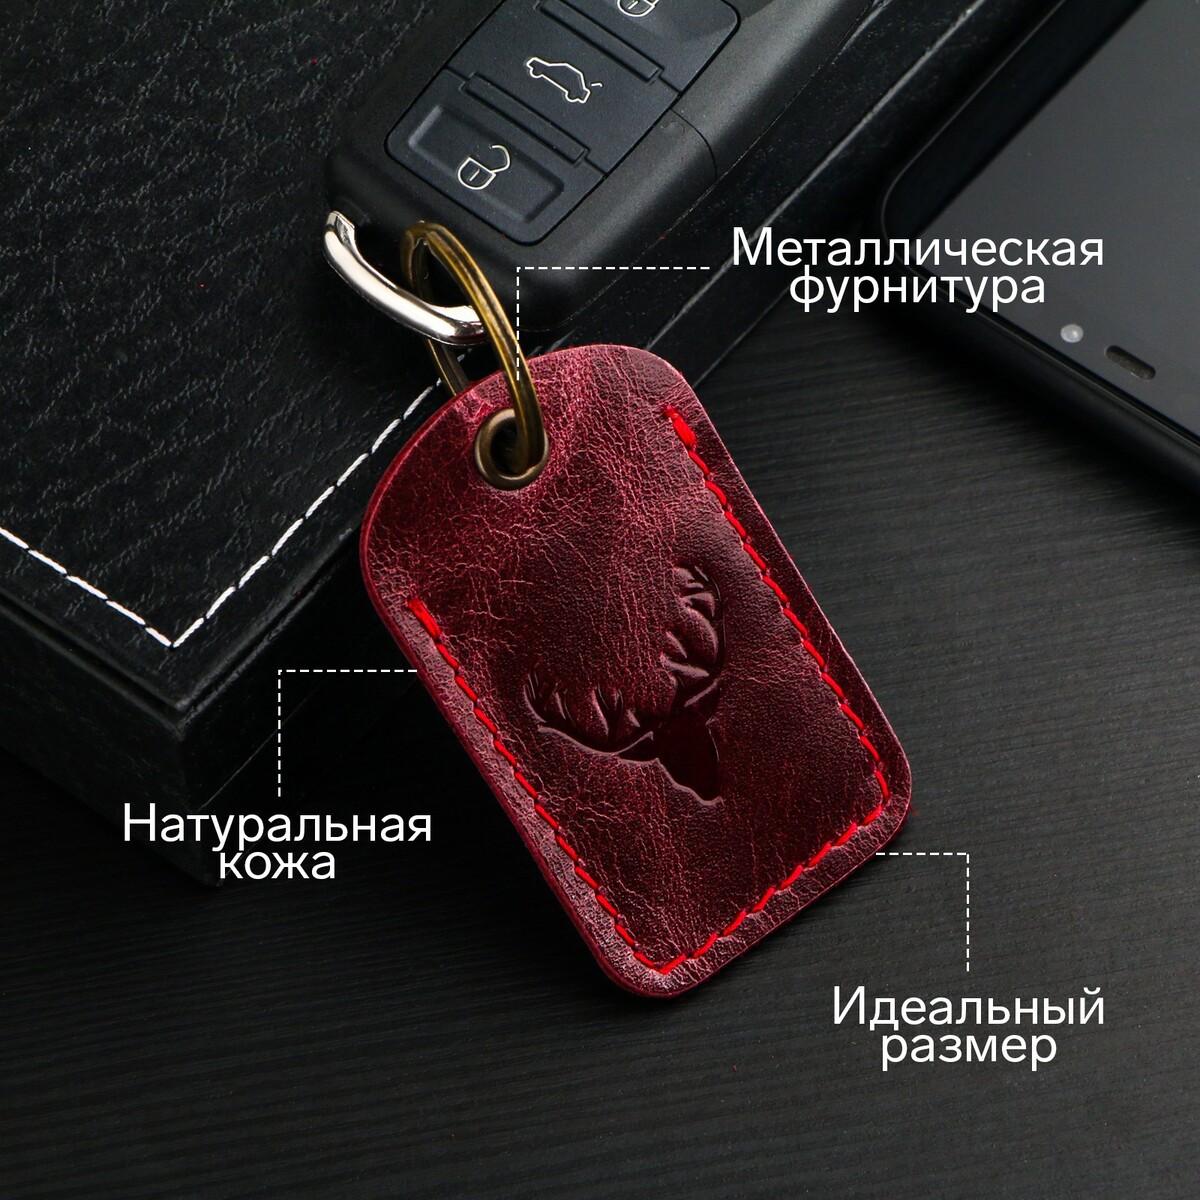 Брелок для автомобильного ключа, метка, прямоугольный, натуральная кожа, бордовый, олень No brand